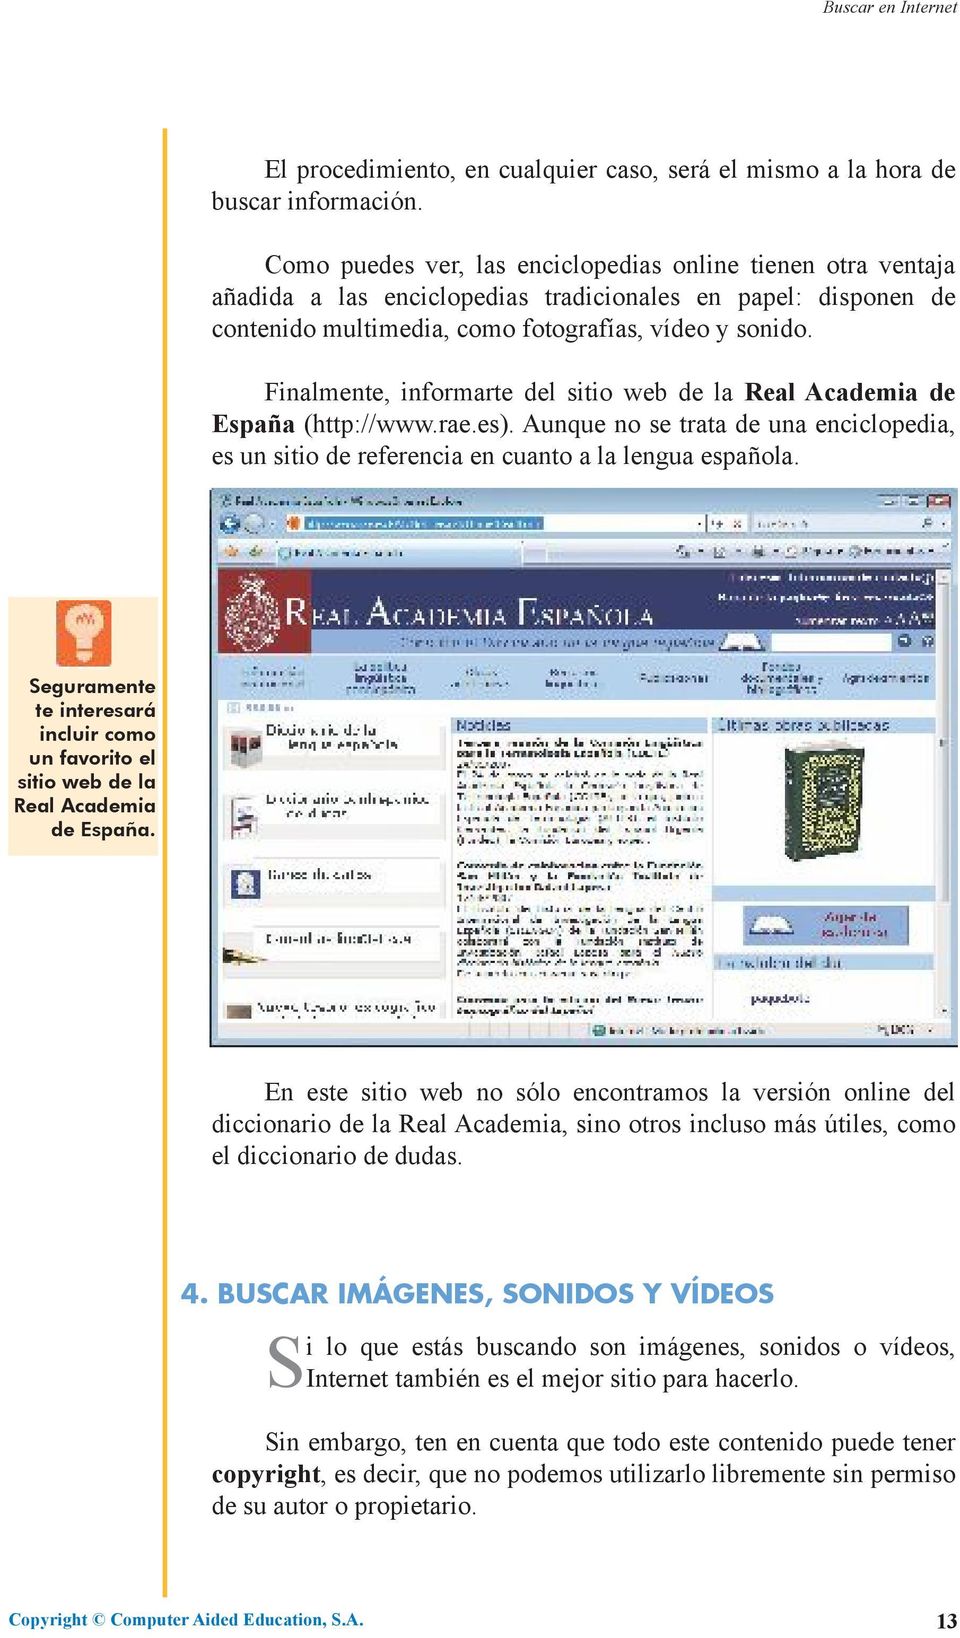 Finalmente, informarte del sitio web de la Real Academia de España (http://www.rae.es). Aunque no se trata de una enciclopedia, es un sitio de referencia en cuanto a la lengua española.